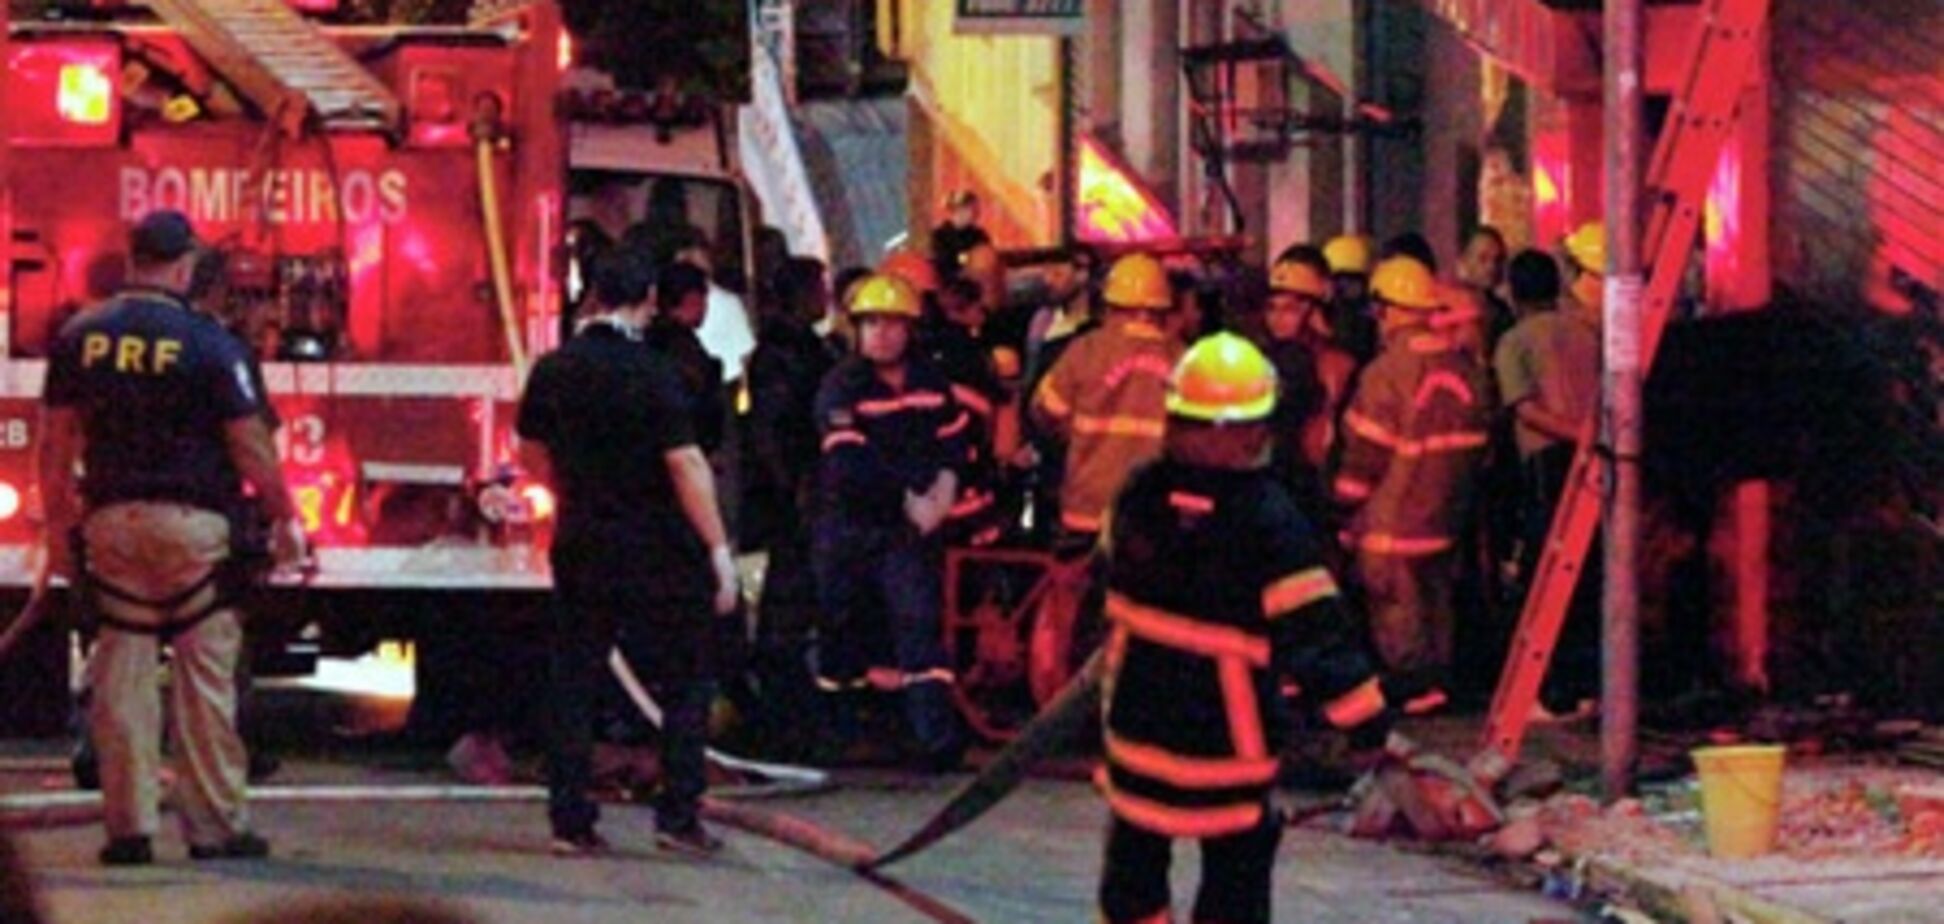 Состояние 75 пострадавших при пожаре в Бразилии крайне тяжелое